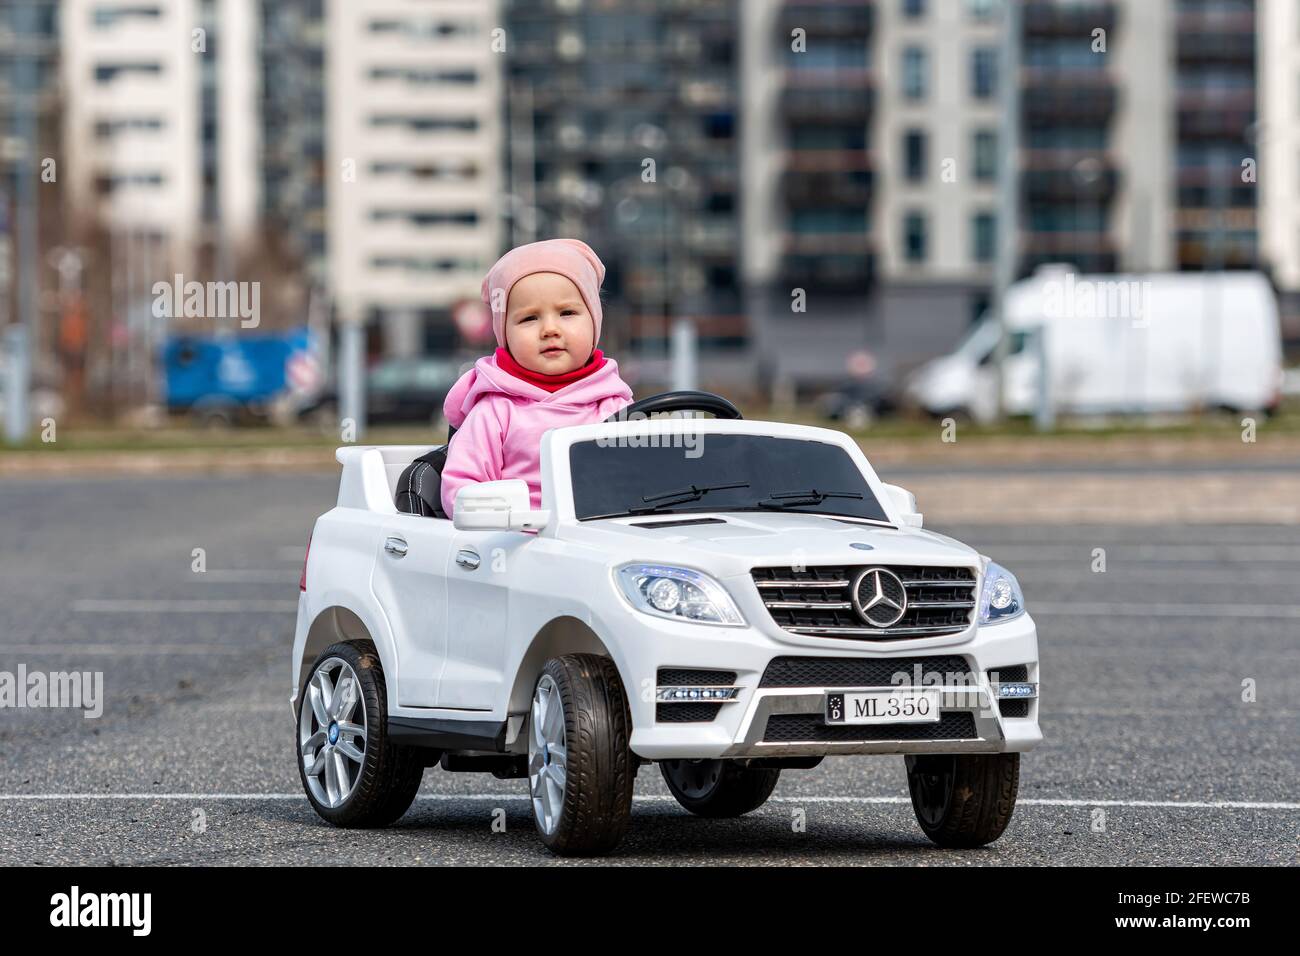 Kleine Girldriving ein Spielzeugauto. Kleiner Fahrer, Kinderwagen, Konzept der Verkehrssicherheit, Kinder im Auto Stockfoto